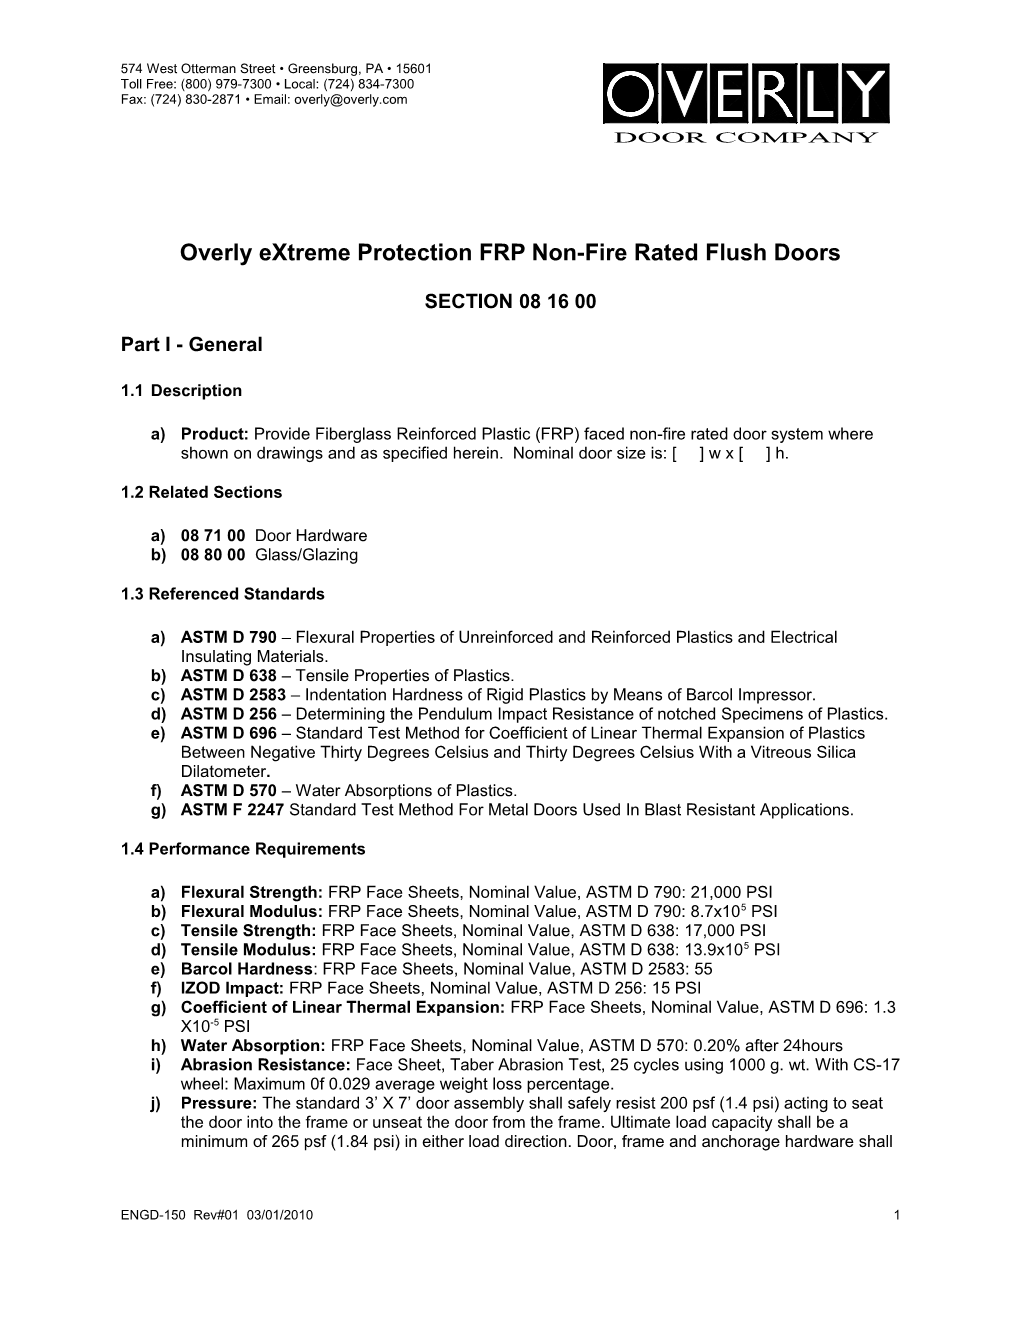 OXP FRP Door Specification